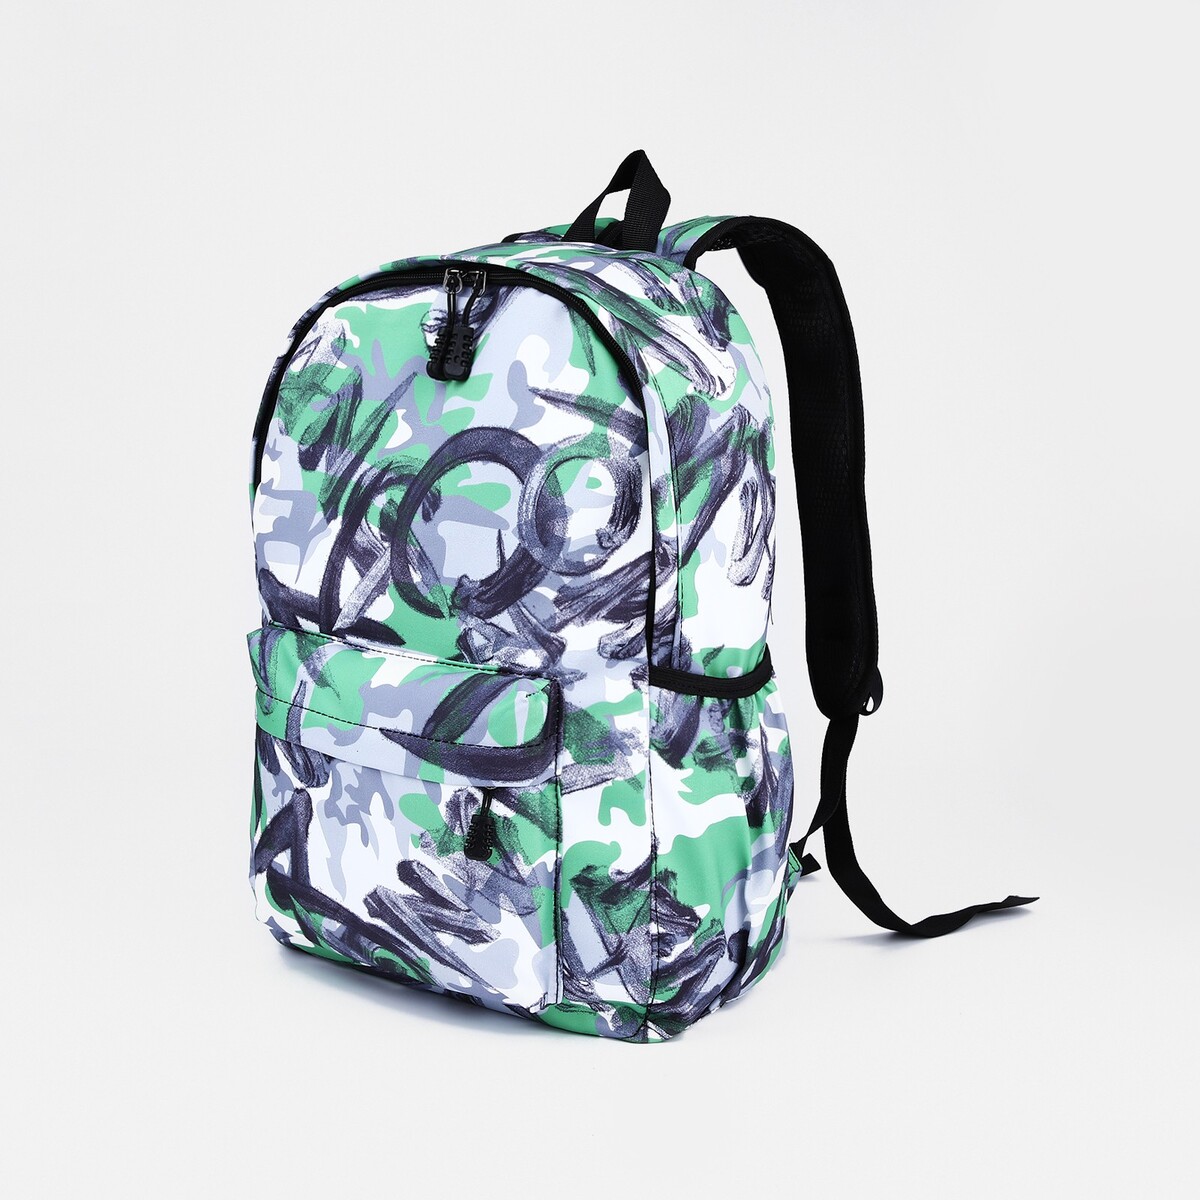 Рюкзак школьный из текстиля на молнии, 3 кармана, цвет зеленый/серый рюкзак сумка на молнии 10188998 3 кармана отдел для ноутбука серый